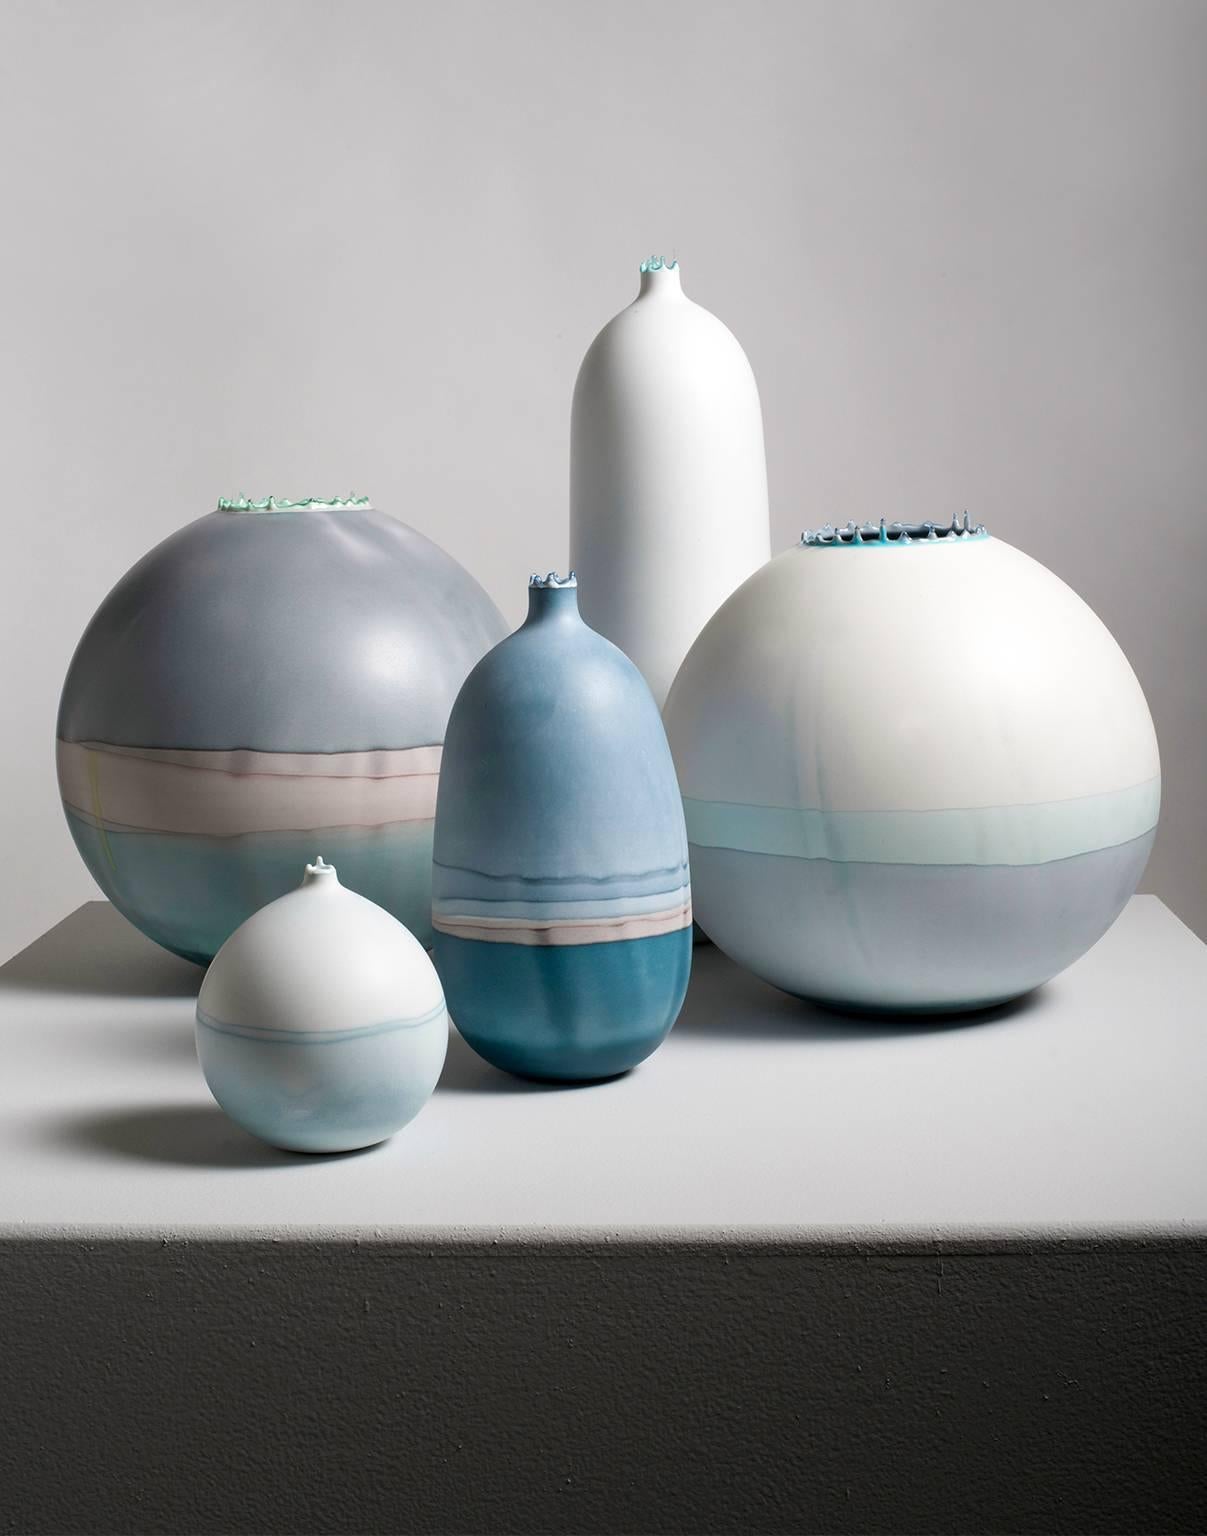 Diese wunderschöne, minimalistische Vase wird von der Künstlerin Elyse Graham in ihrem Studio in Los Angeles handgefertigt.

Diese Gefäßkollektion ist inspiriert von den durch Gletschererosion entstandenen gestreiften Landschaften und den schönen